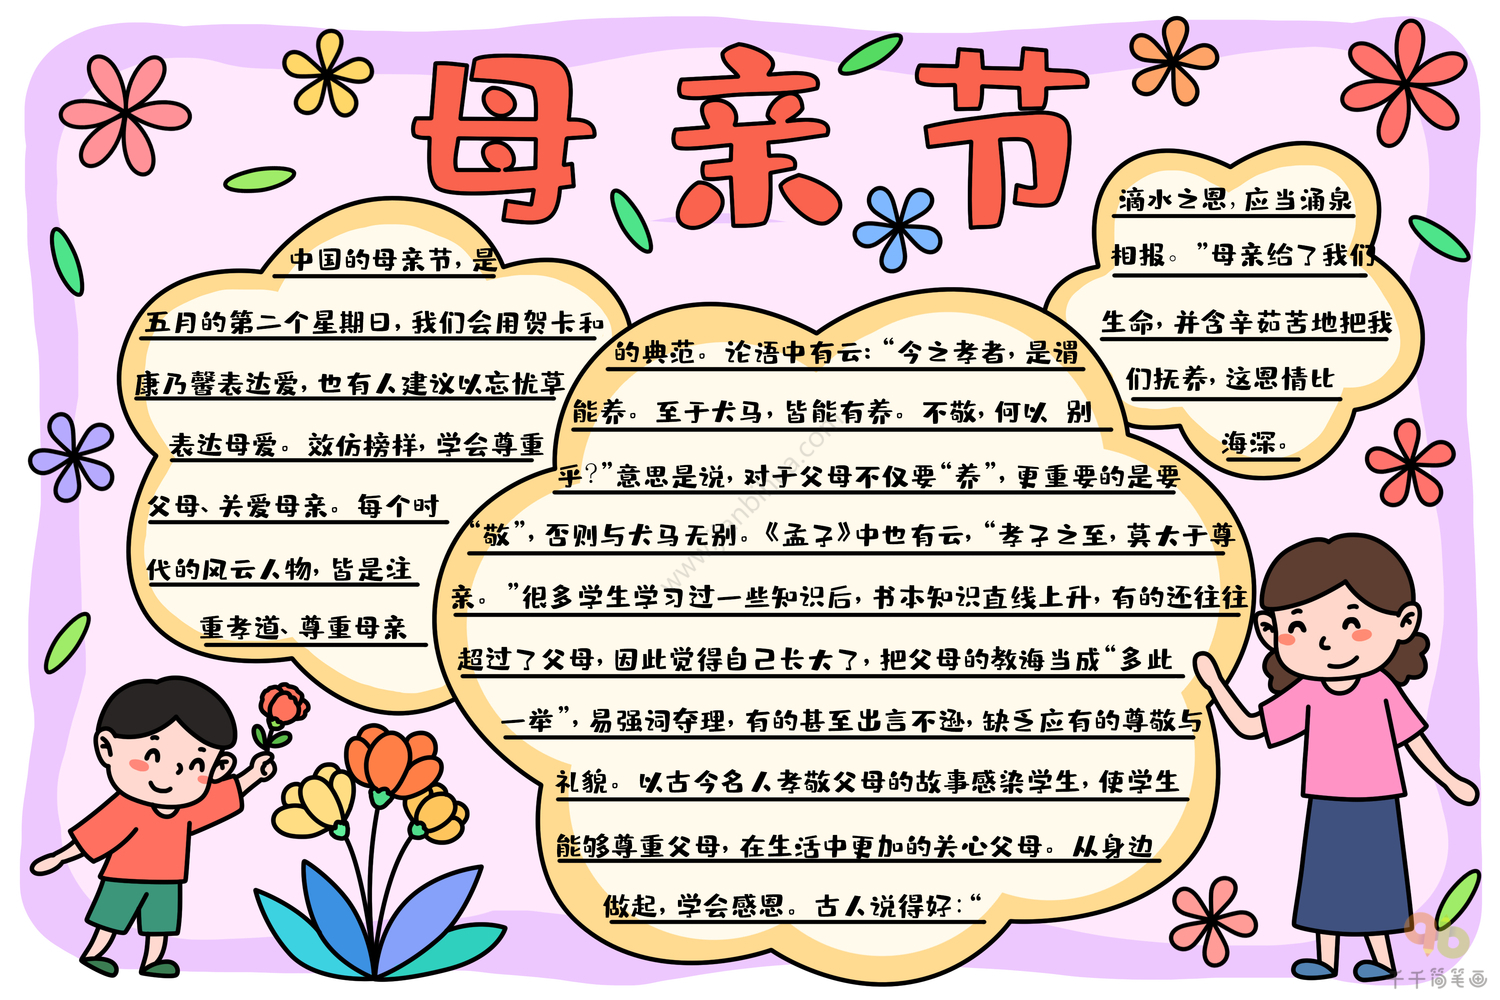 粉黄色母亲 花手绘母亲节学校宣传中文手抄报 - 模板 - Canva可画